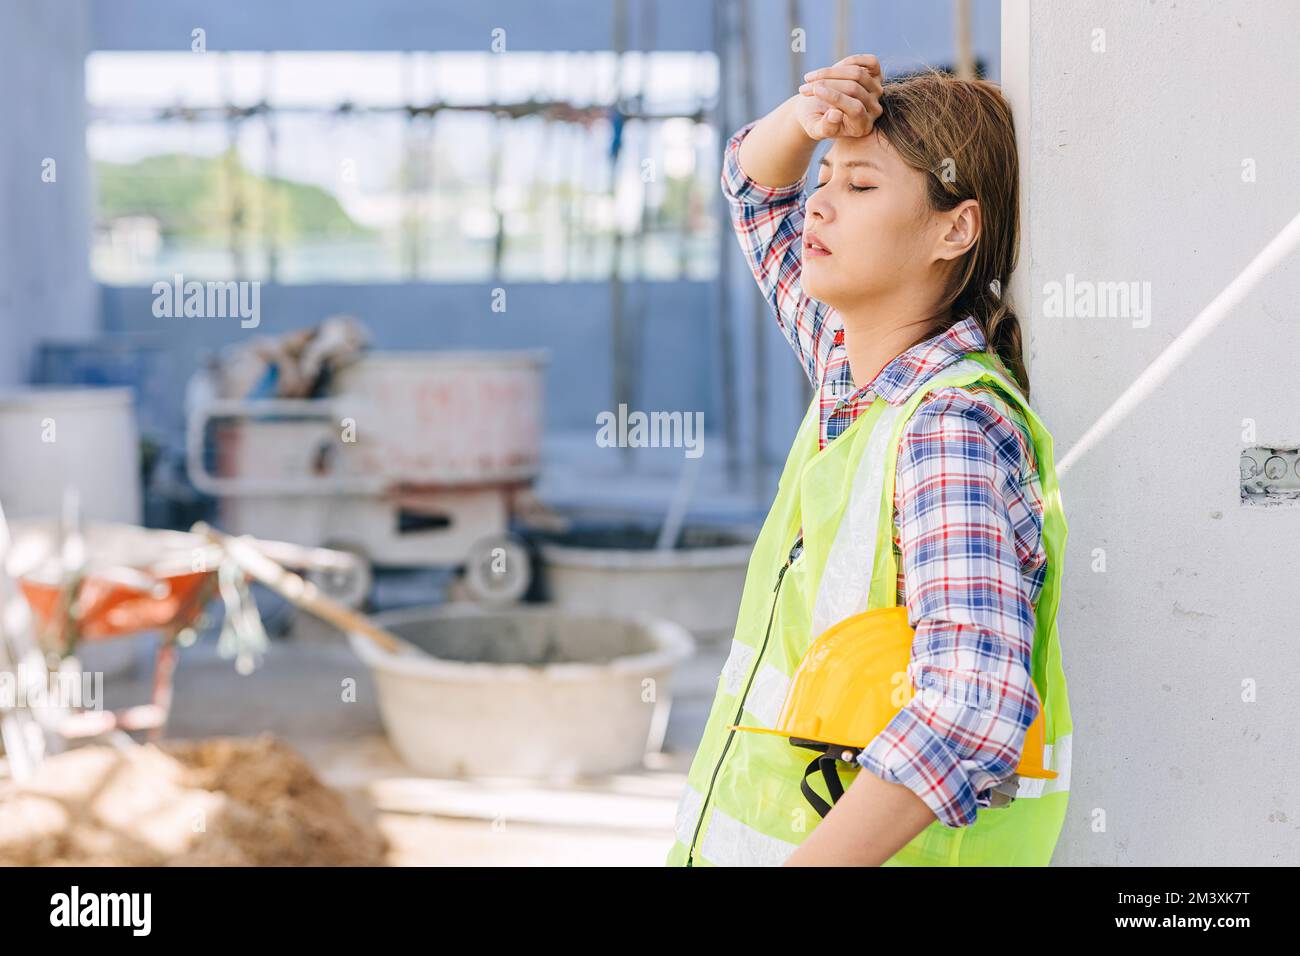 femme travailleuse fatiguée du travail dur fatigue surmenage être malade sur le chantier de construction Banque D'Images